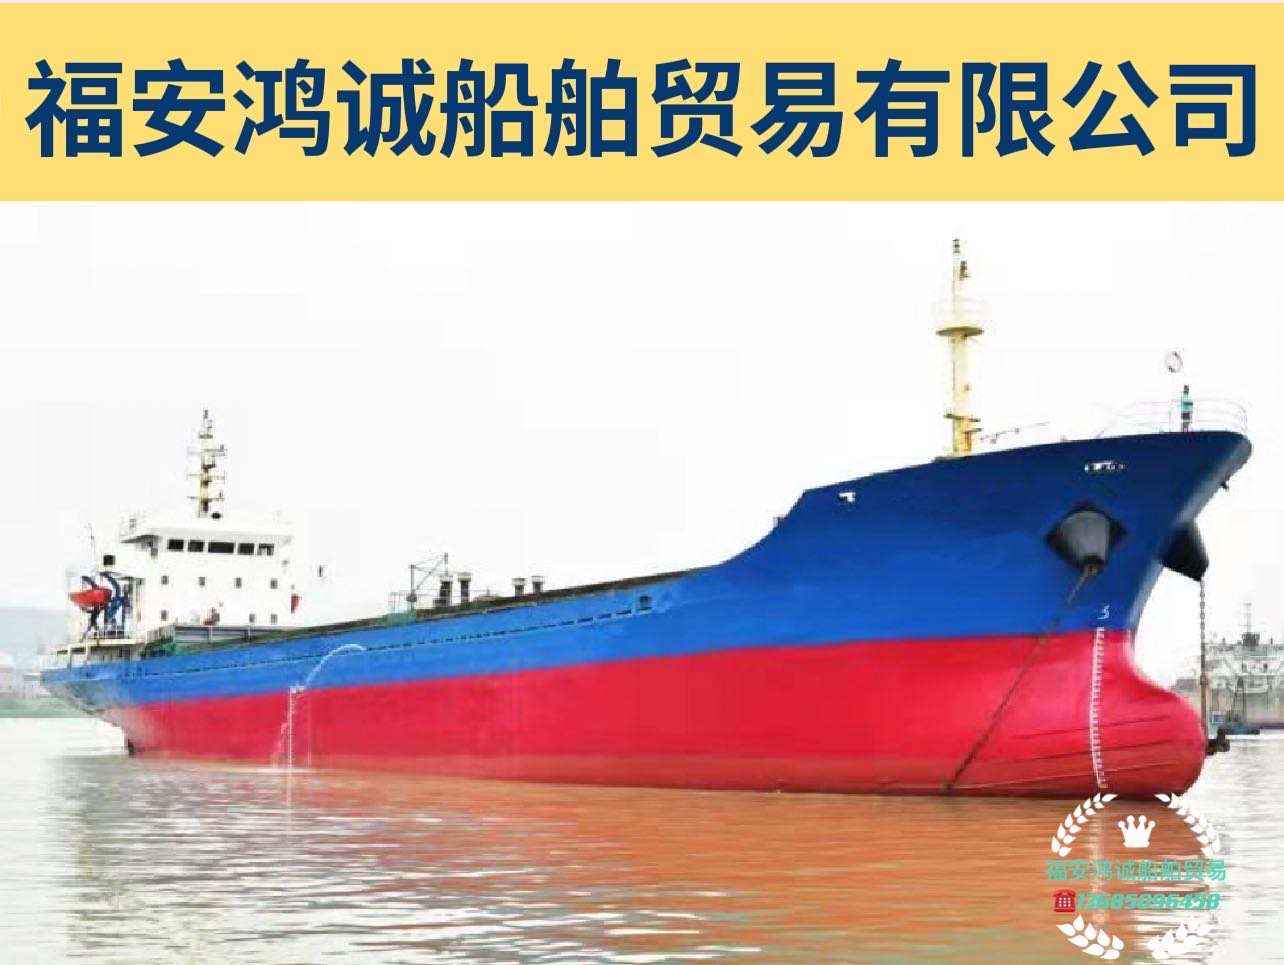 出售2008年造5060吨散货船